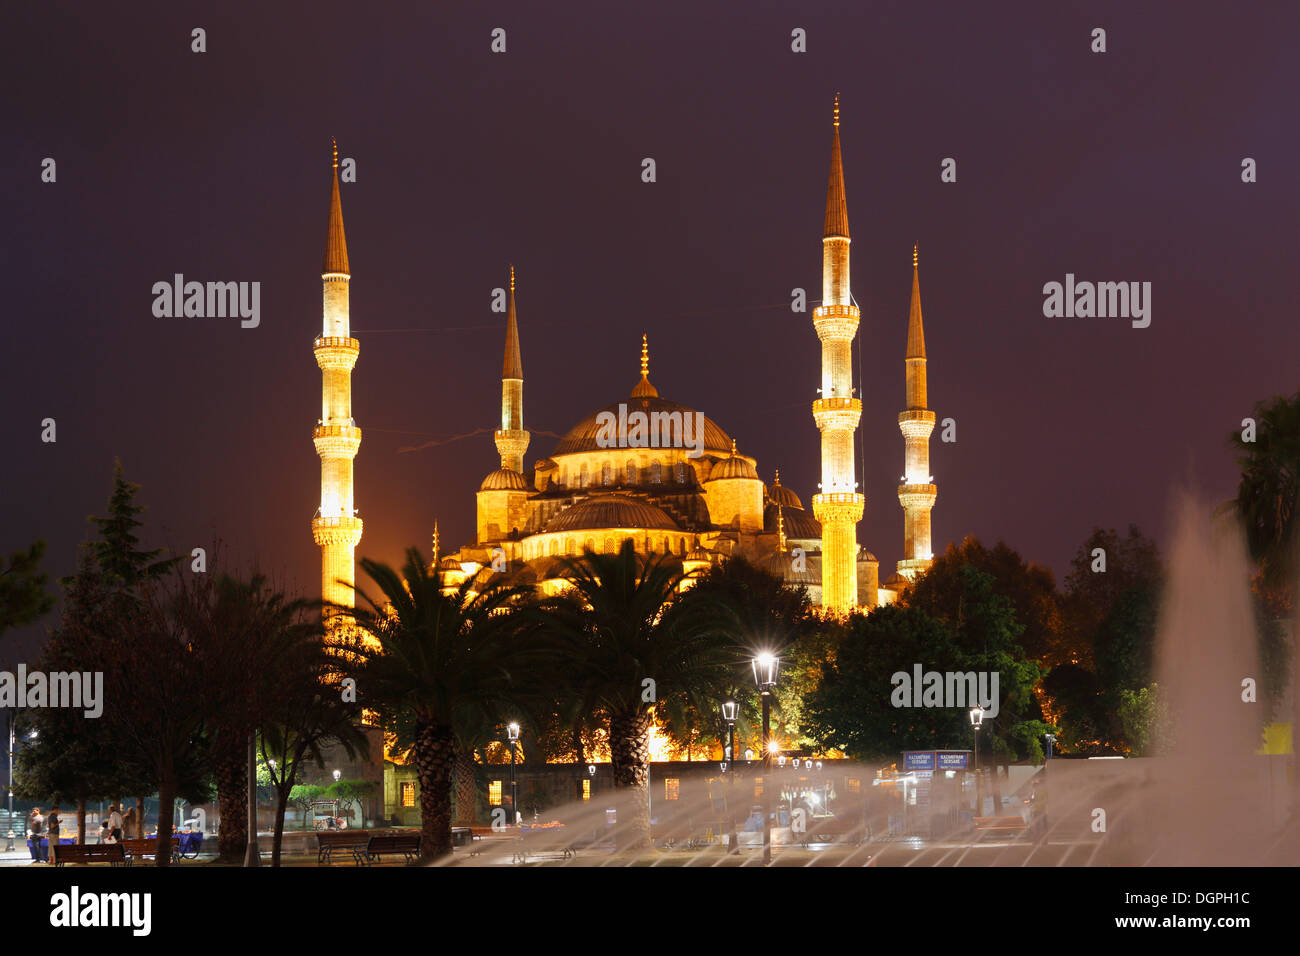 Blaue Moschee oder Sultan Ahmed Mosque, Sultanahmet Park, Istanbul, europäische Seite, Provinz Istanbul, Türkei, europäische Seite Stockfoto